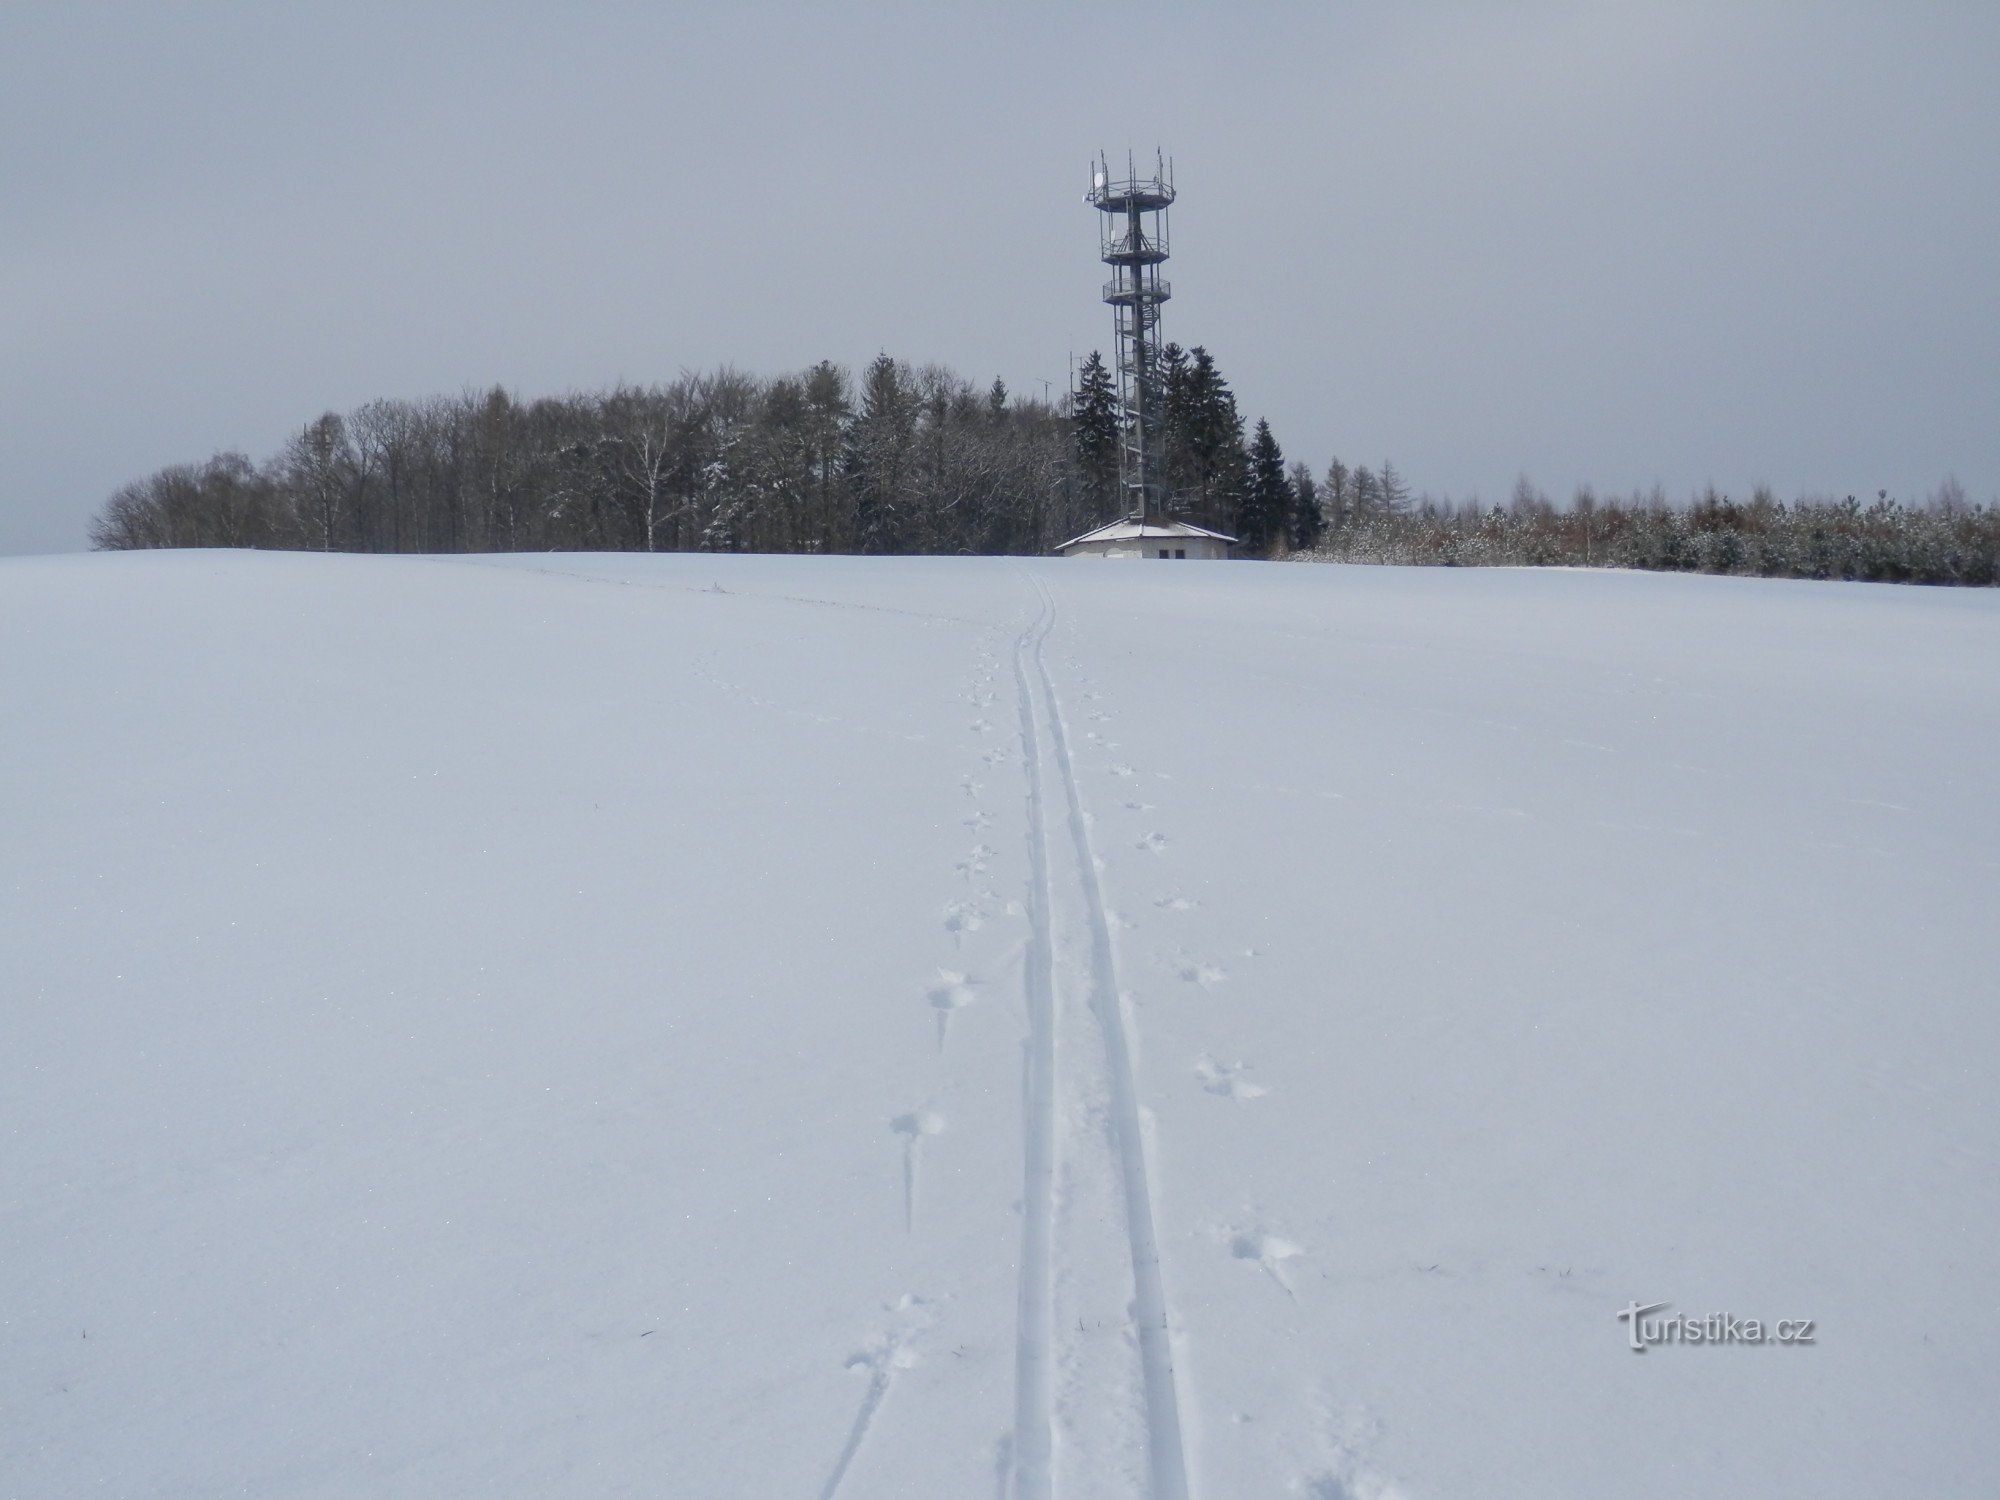 Snefyldte Vysoká ringer kun et par gange om året